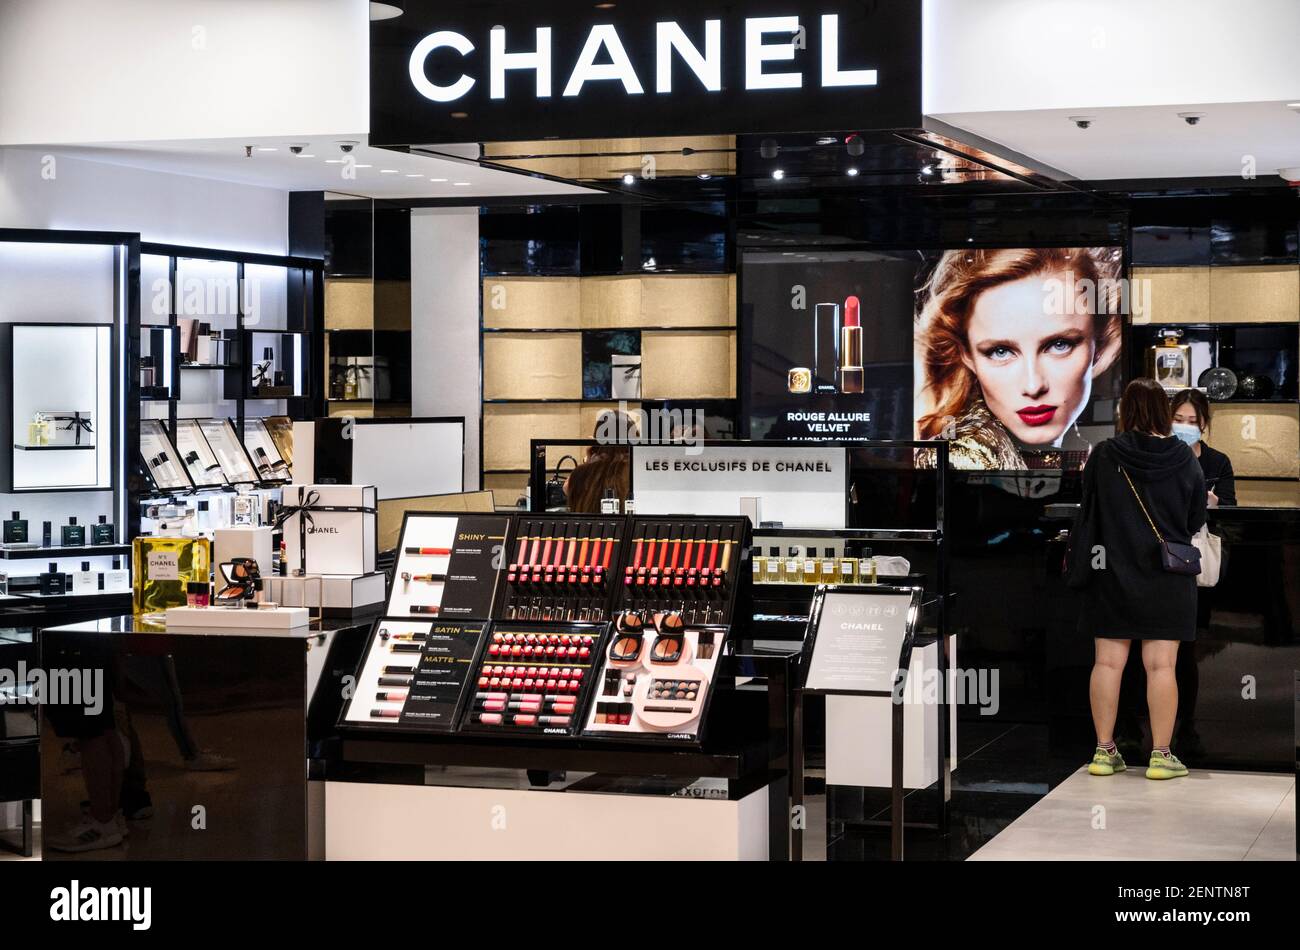 Marca multinacional francesa de ropa y productos de belleza, tienda Chanel  vista en Hong Kong Fotografía de stock - Alamy